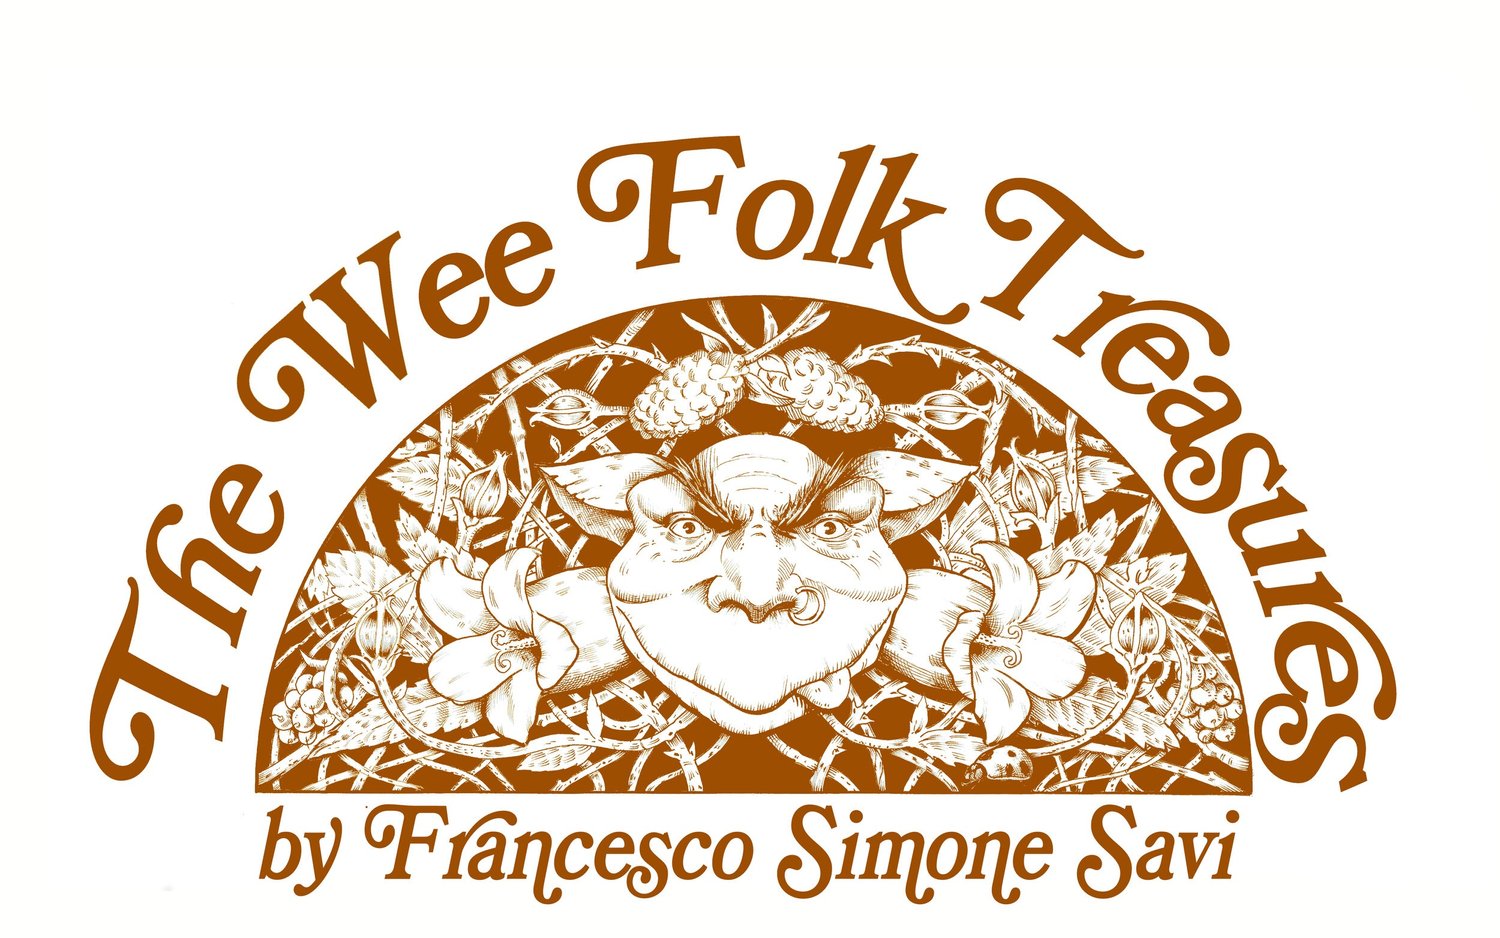 The Wee Folk Treasures